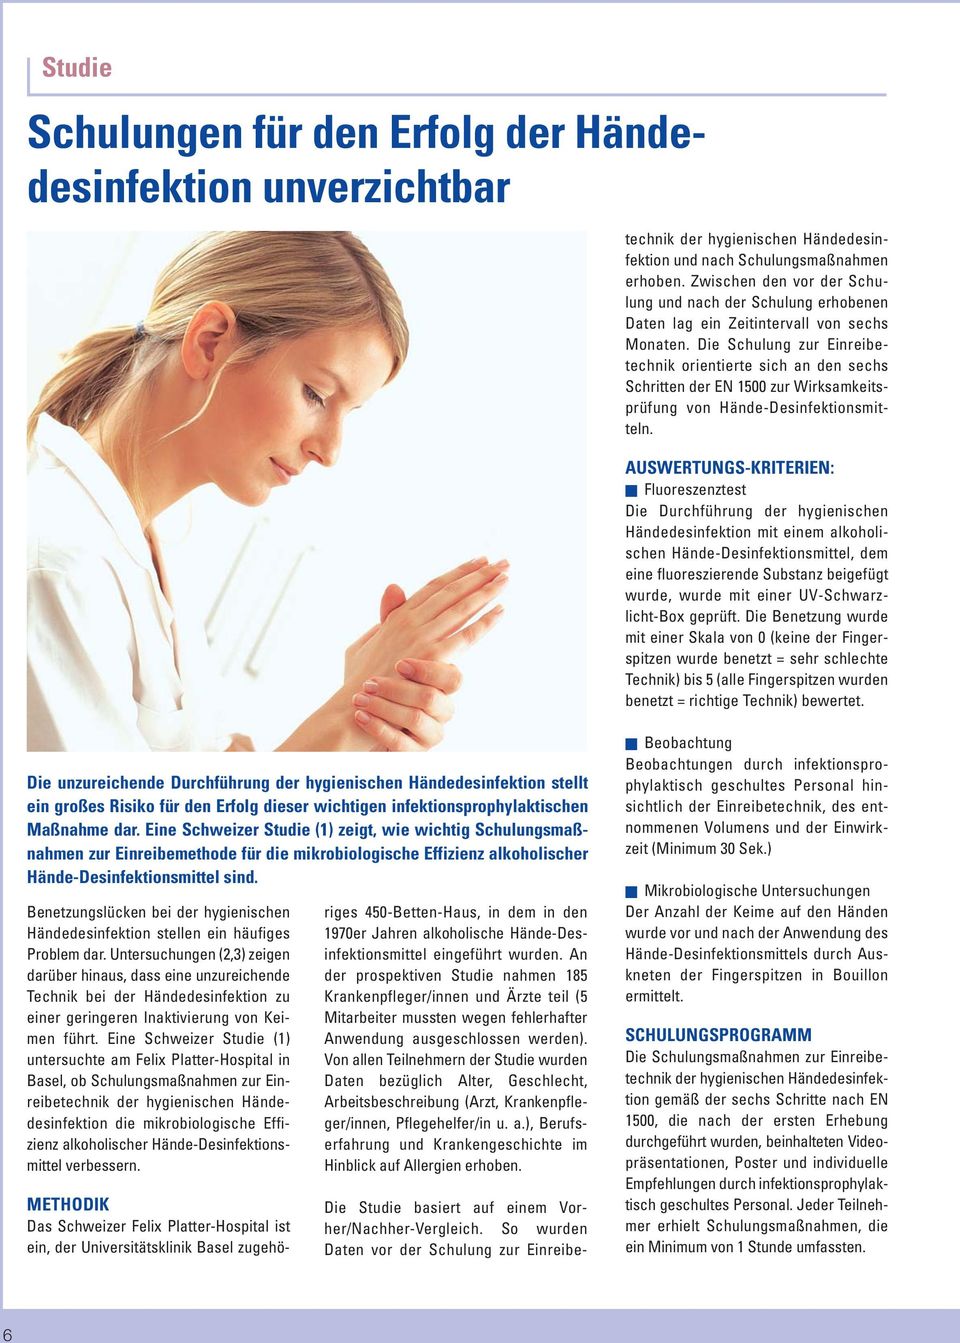 Die Schulung zur Einreibetechnik orientierte sich an den sechs Schritten der EN 1500 zur Wirksamkeitsprüfung von Hände-Desinfektionsmitteln.